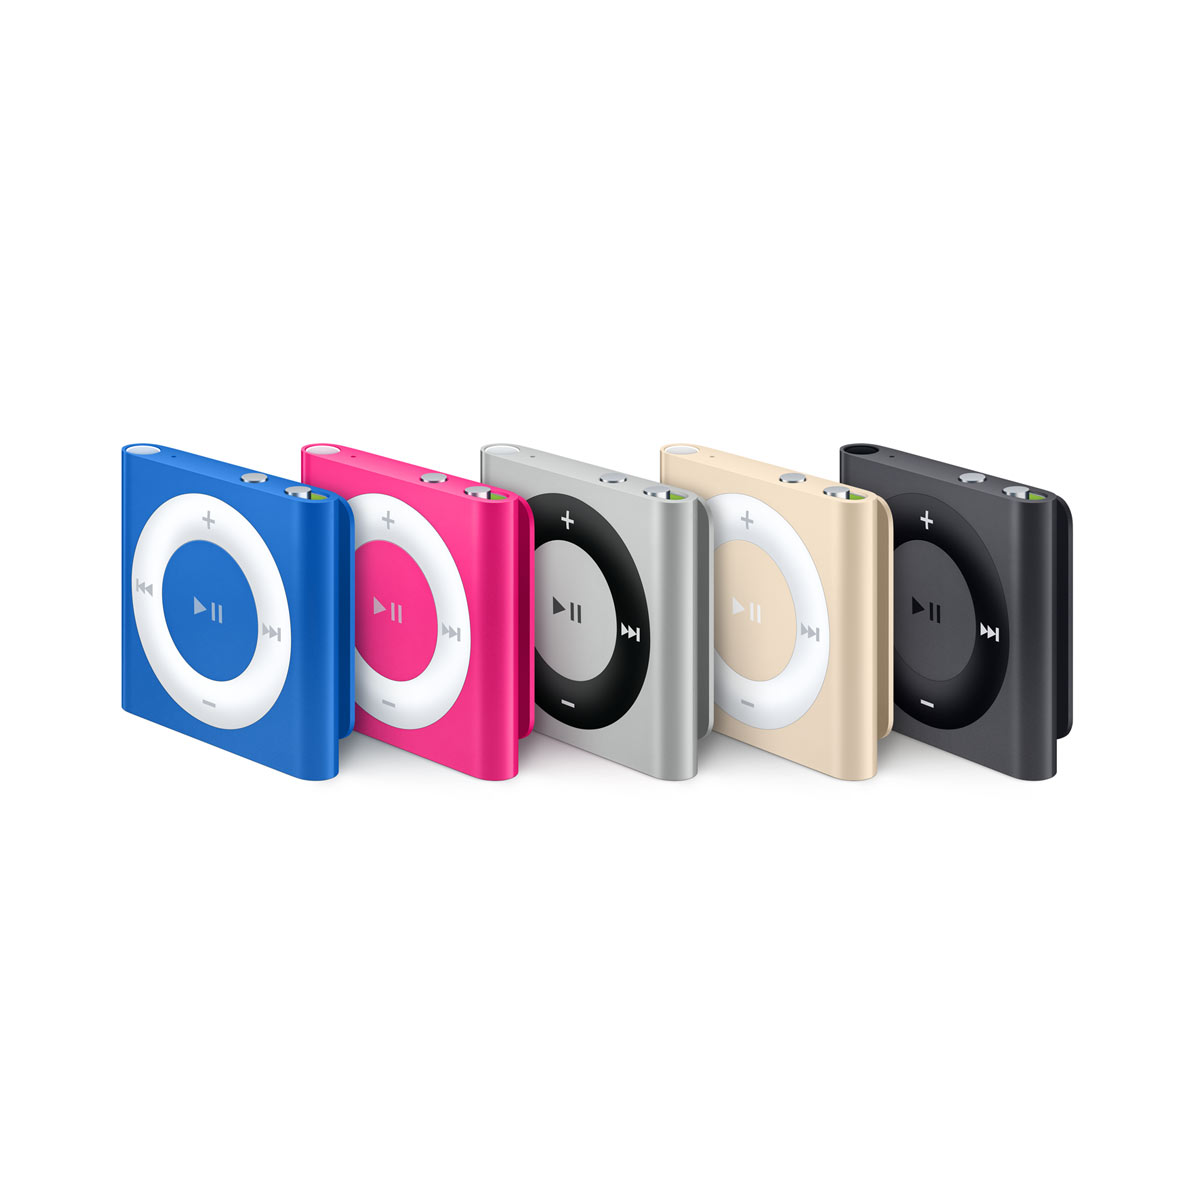 Слухи об остановке производства iPod shuffle оказались «уткой»